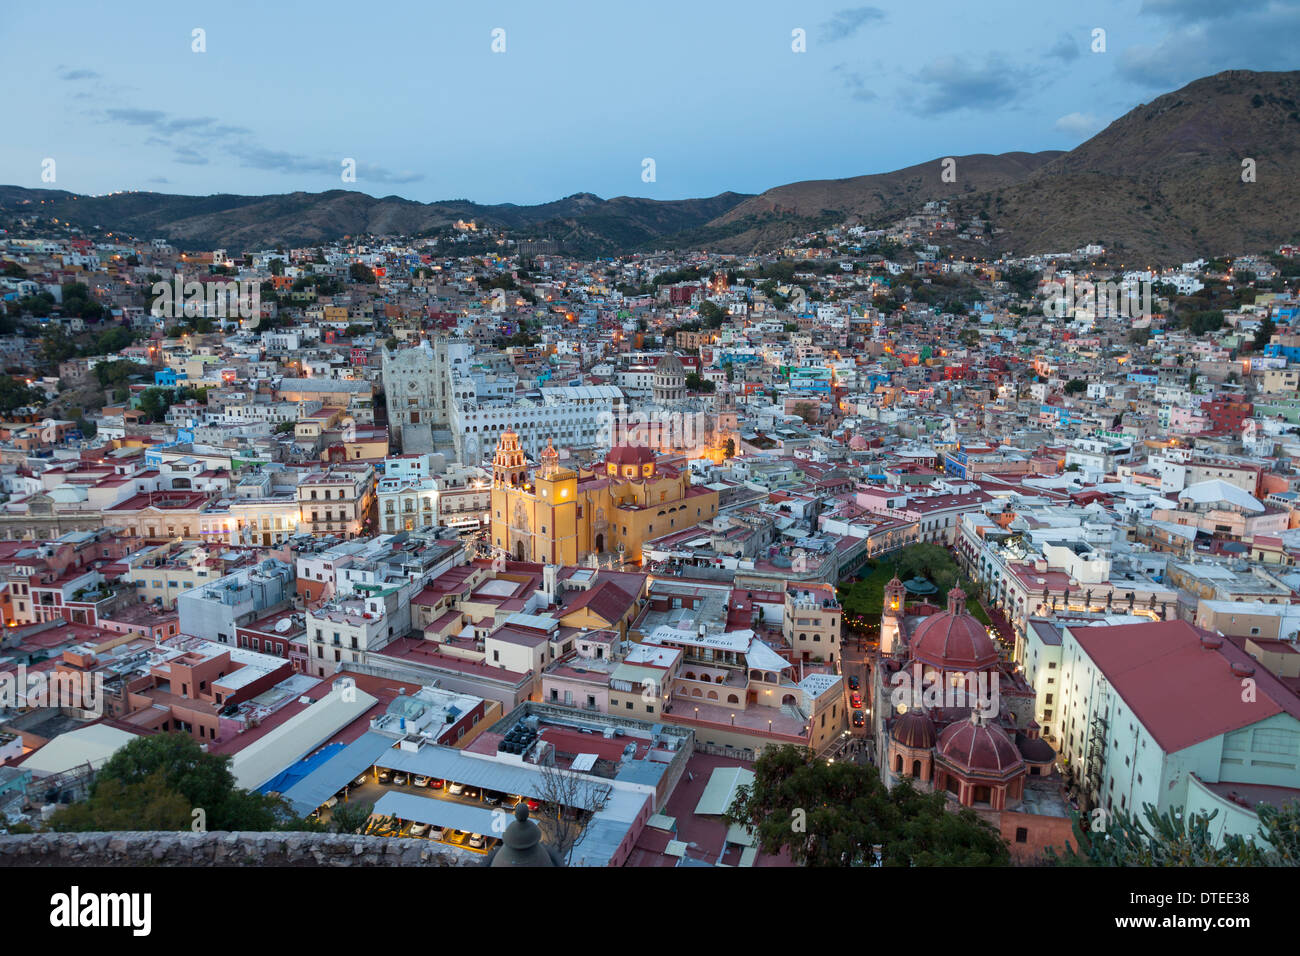 Panoramica della città di Guanajuato al crepuscolo - Guanajuato, Guanajuato, Messico Foto Stock